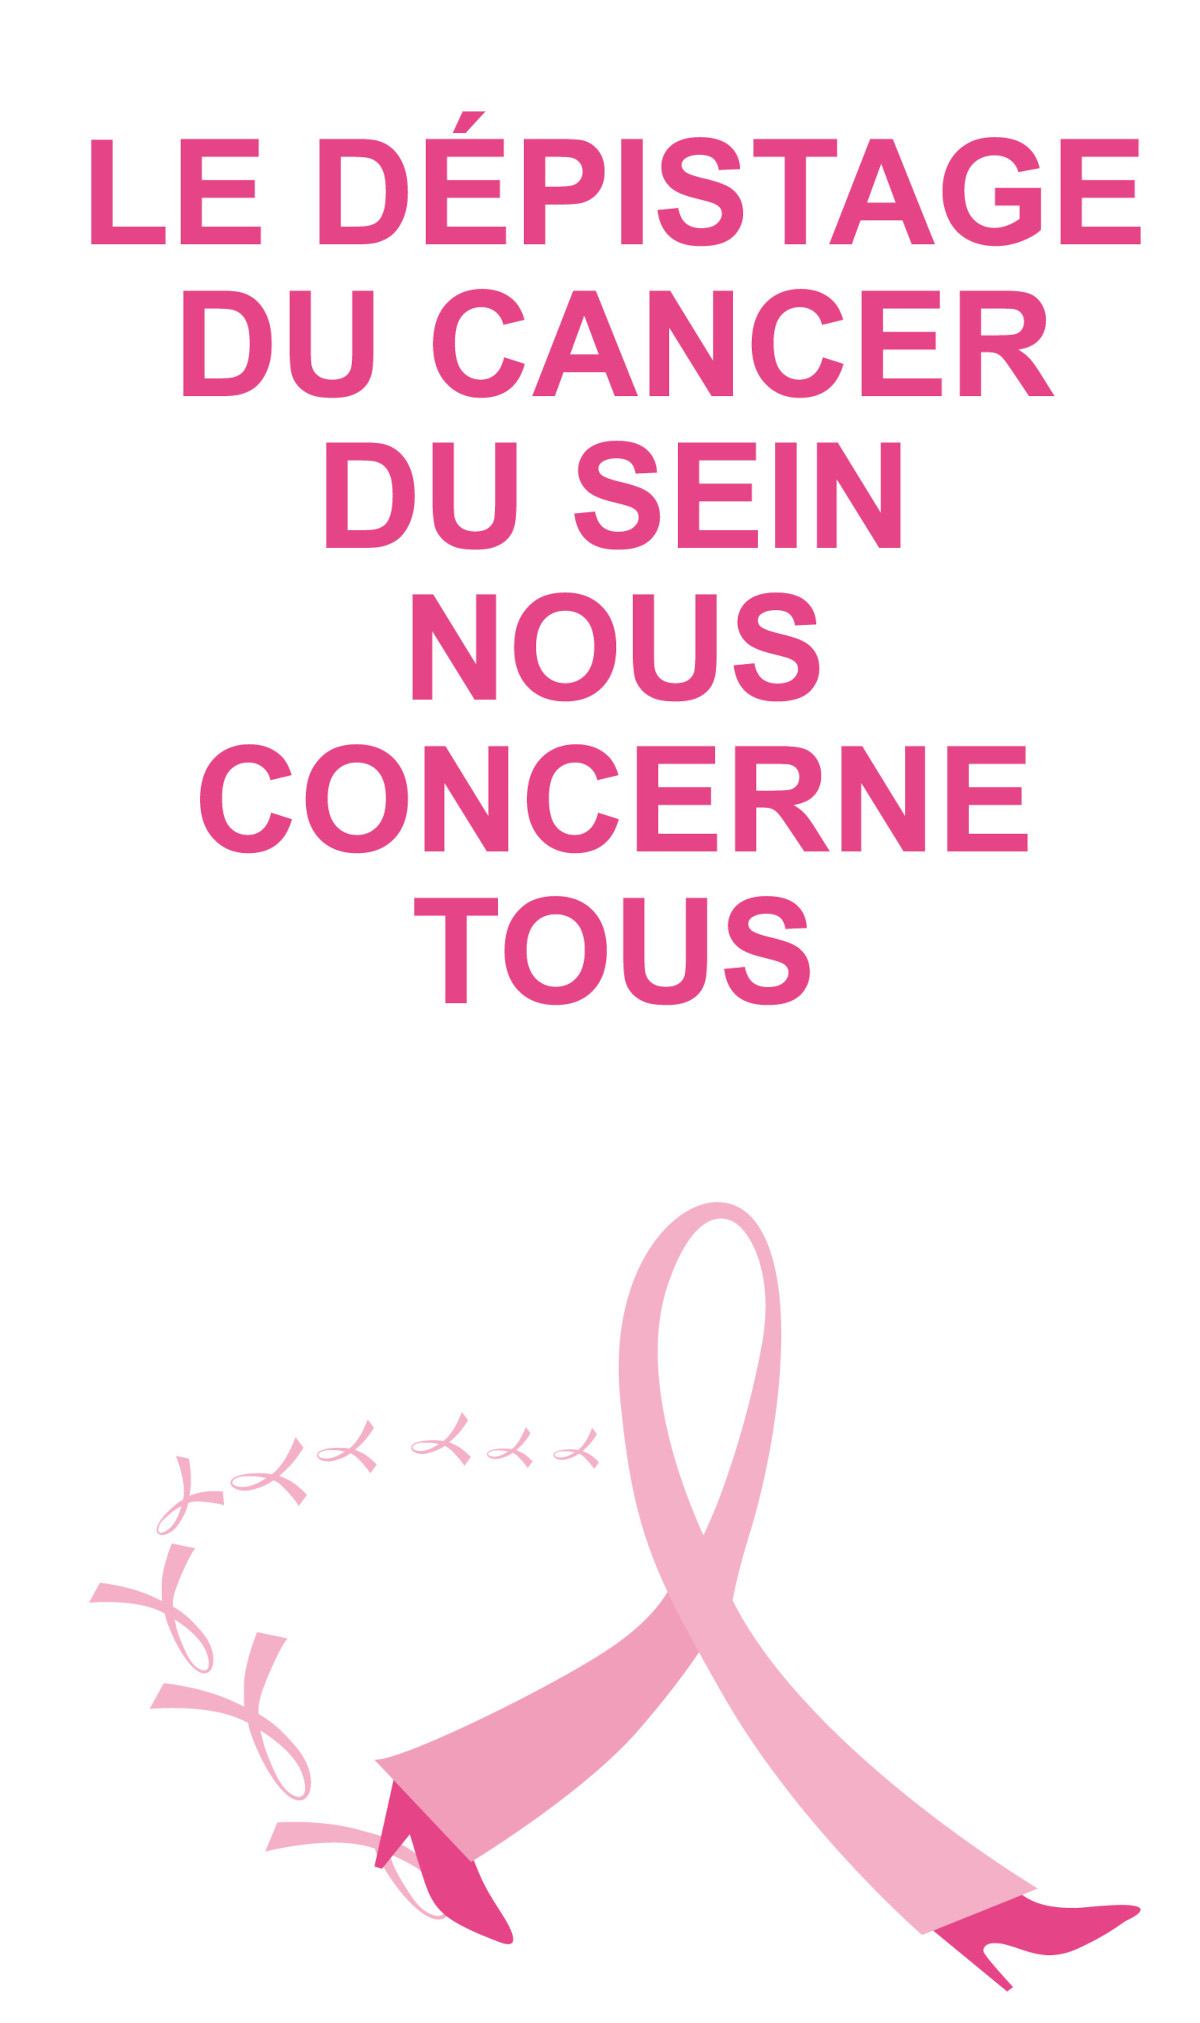 Cancer du sein : quelles mesures préventives ?